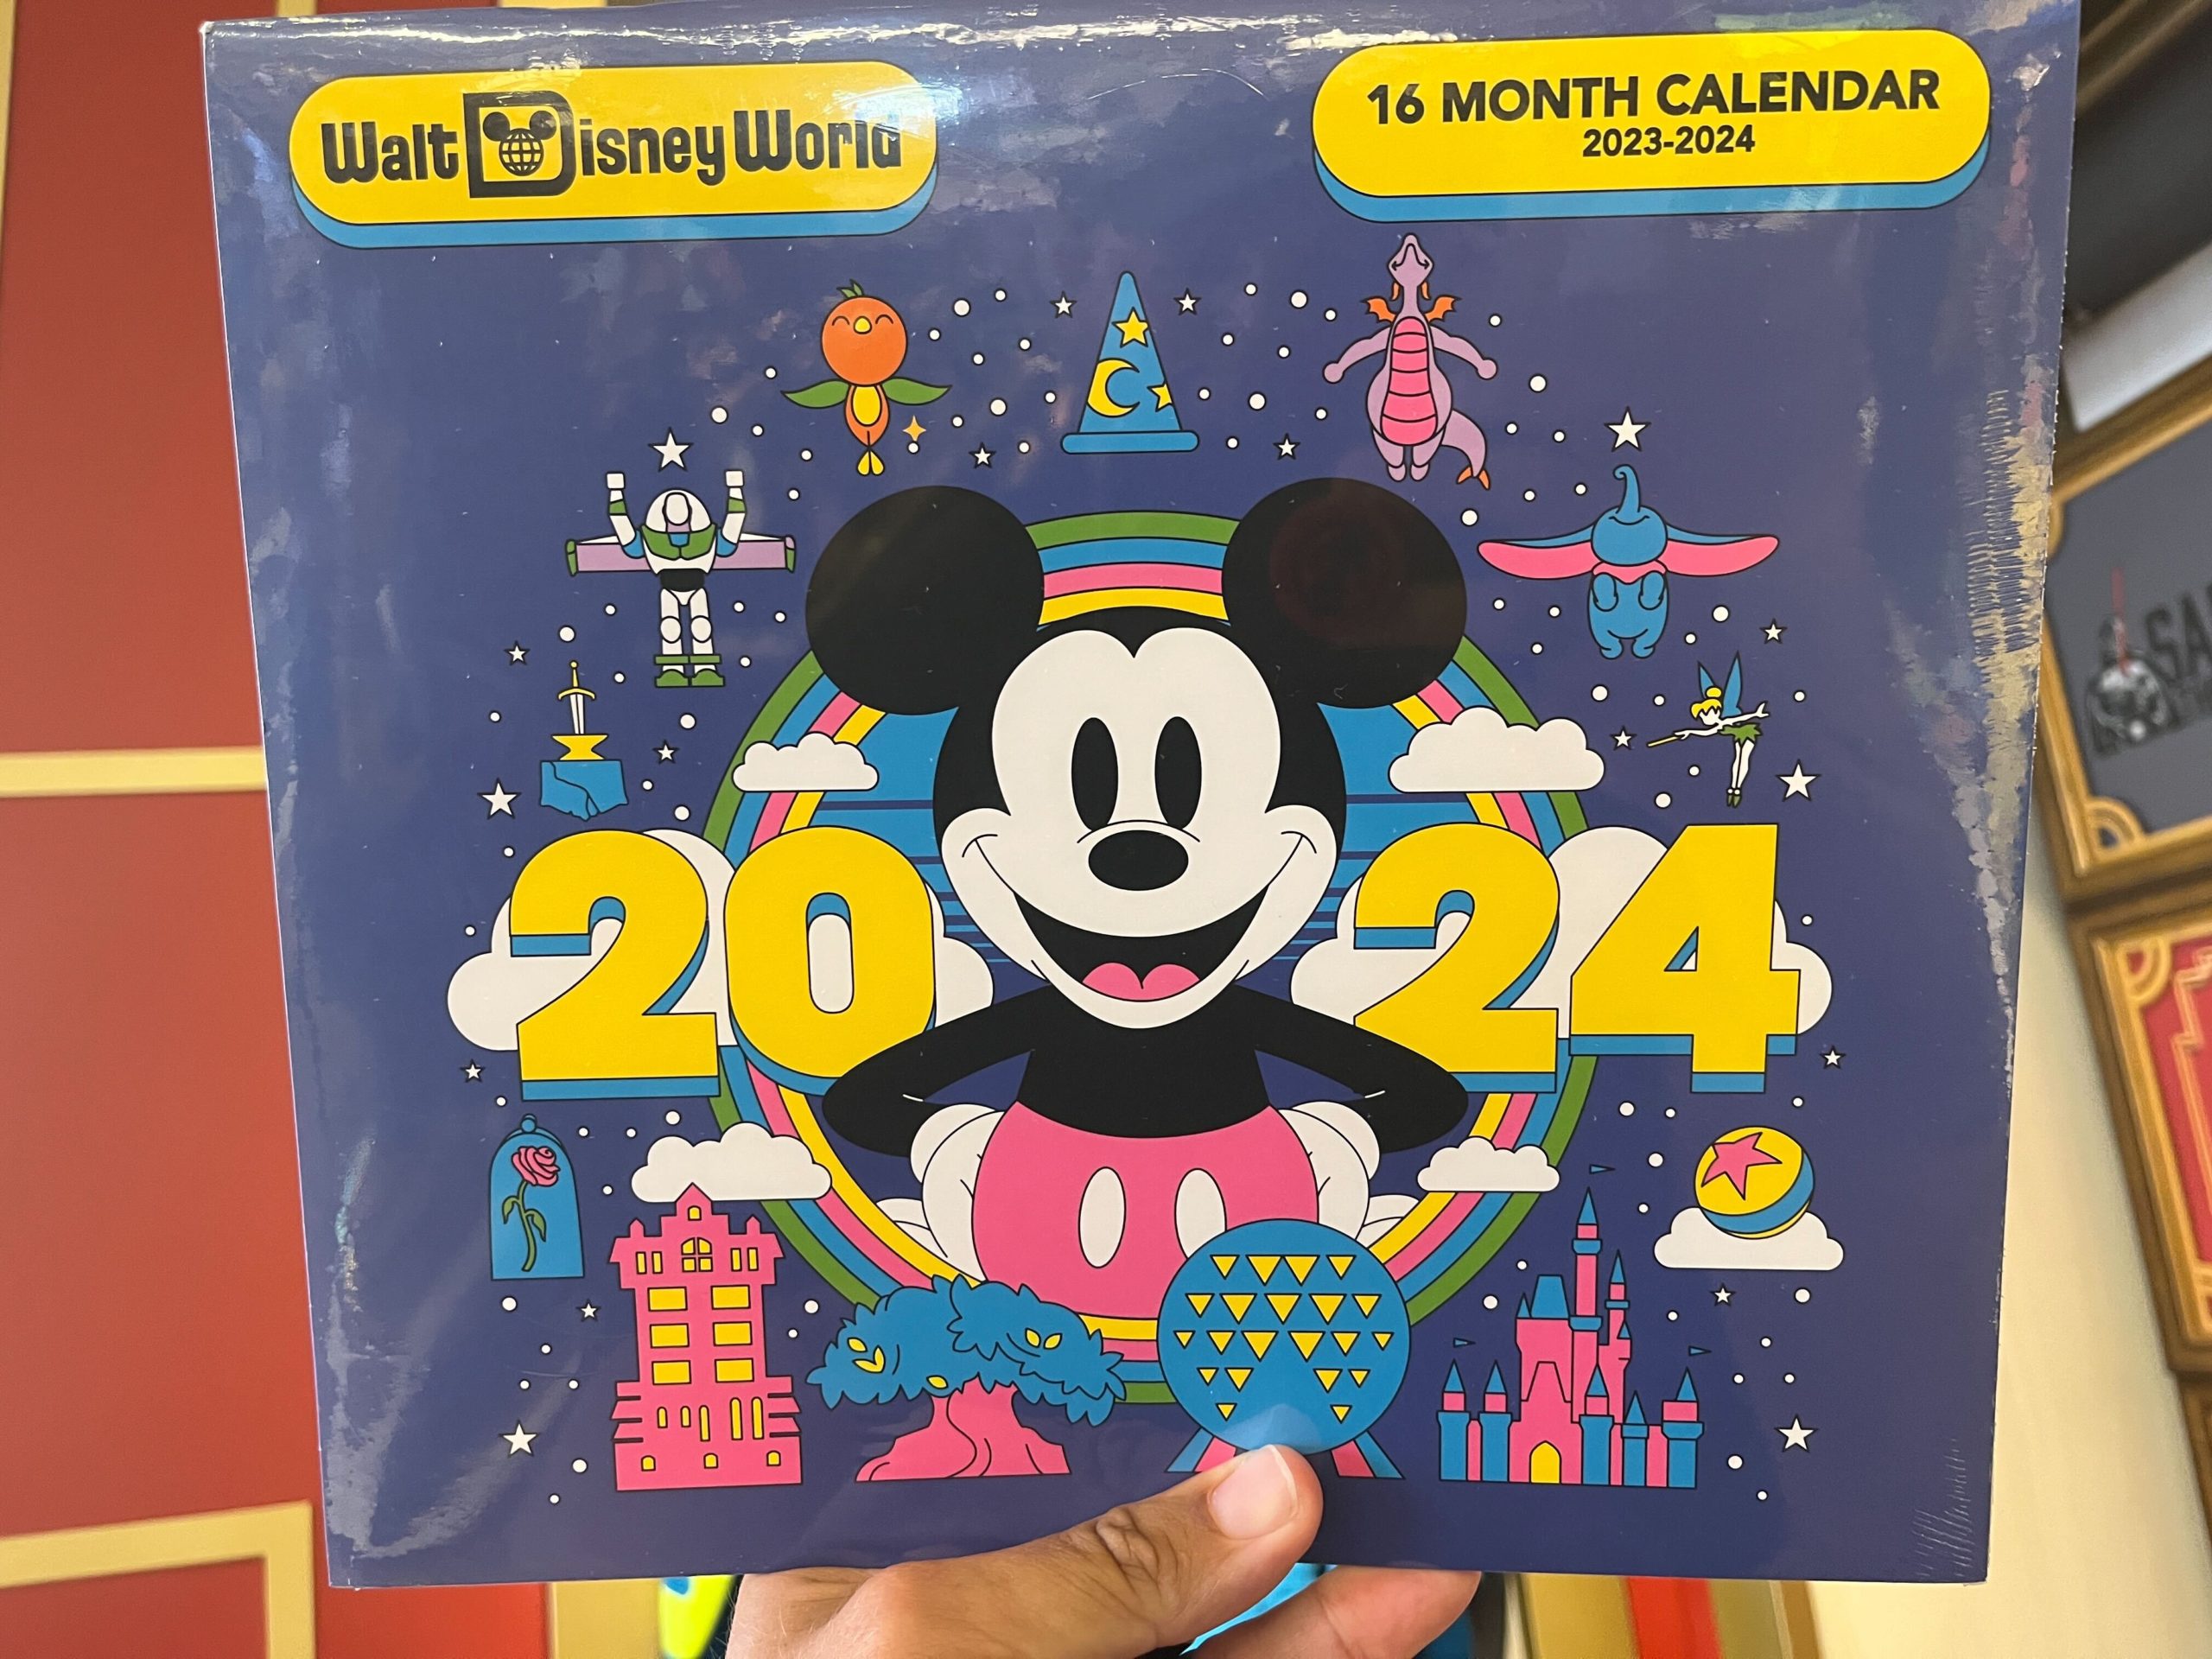 2023 Wdw Disney Hollywood Studios 2023 2024 Walt Disney World Calendar 2 Scaled 